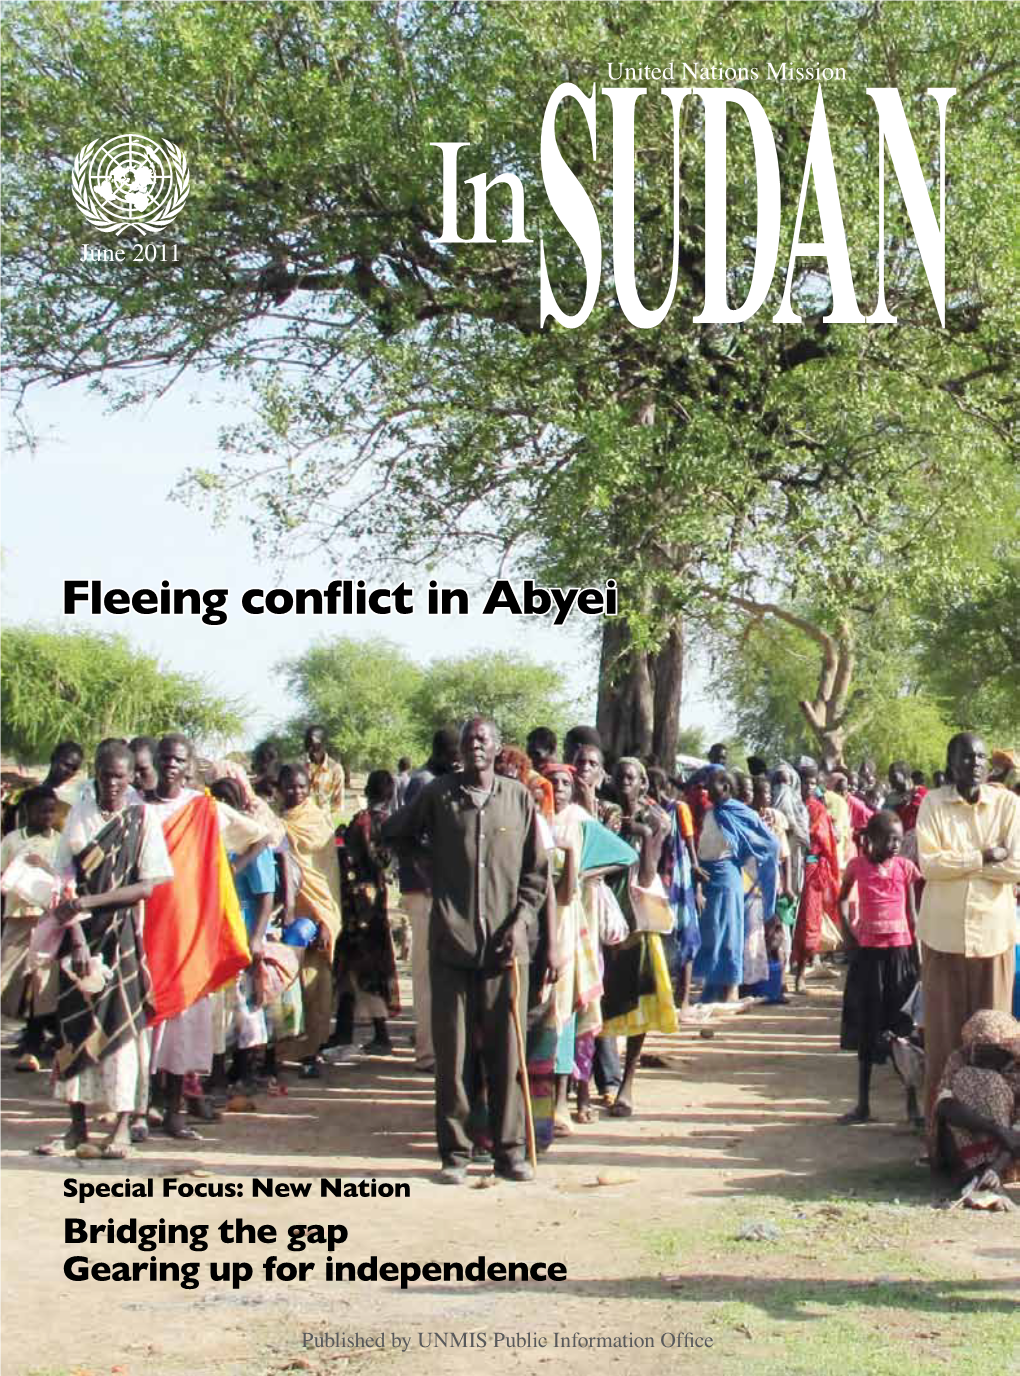 Fleeing Conflict in Abyei